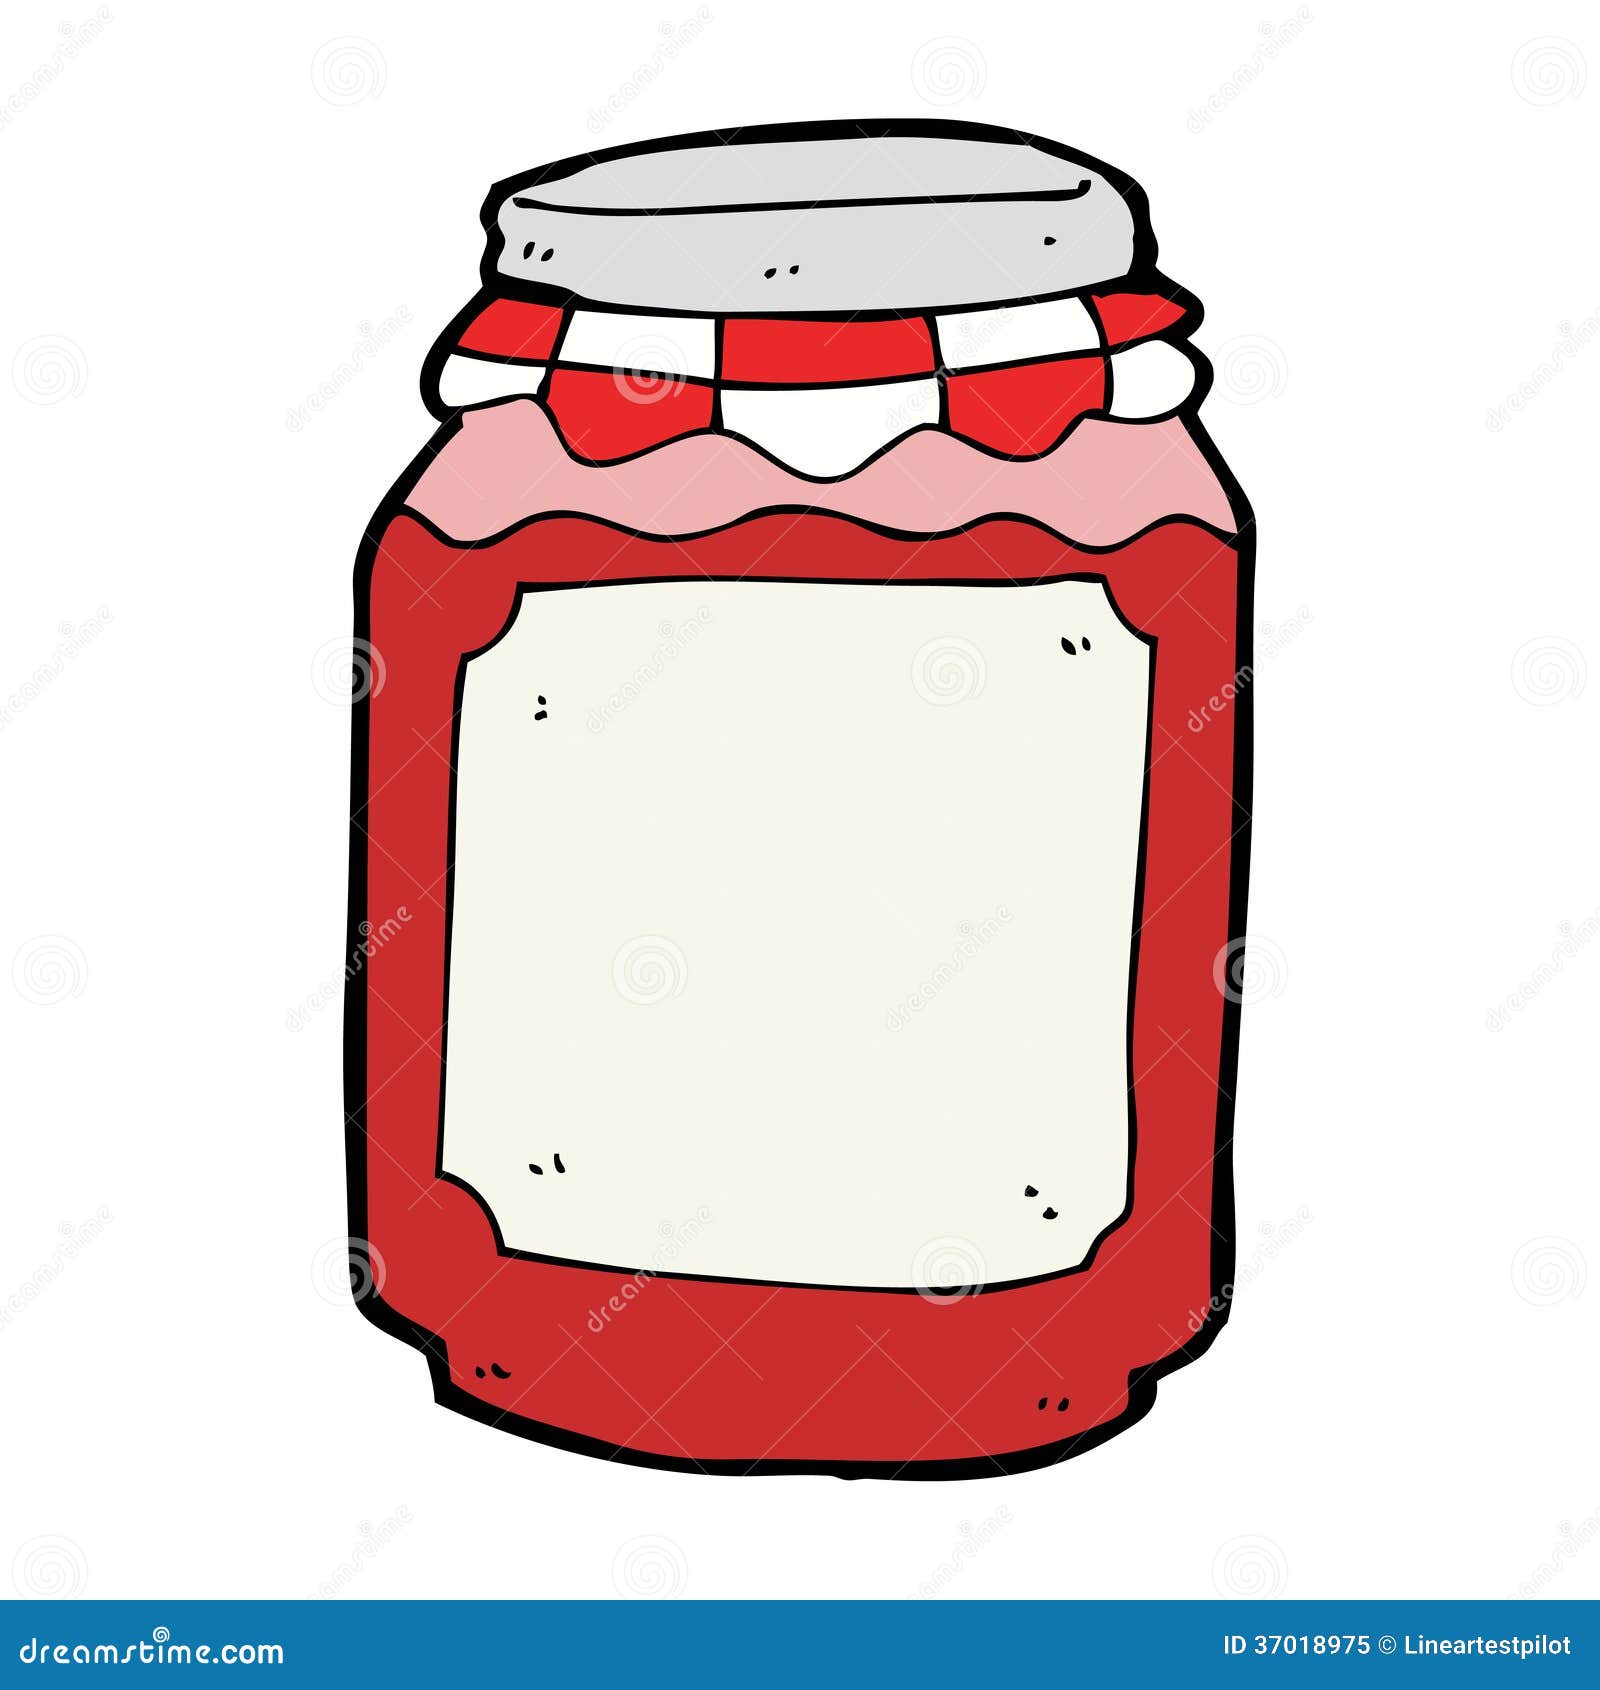 Cartoon jar of jam stock vector. Illustration of funny - 37018975